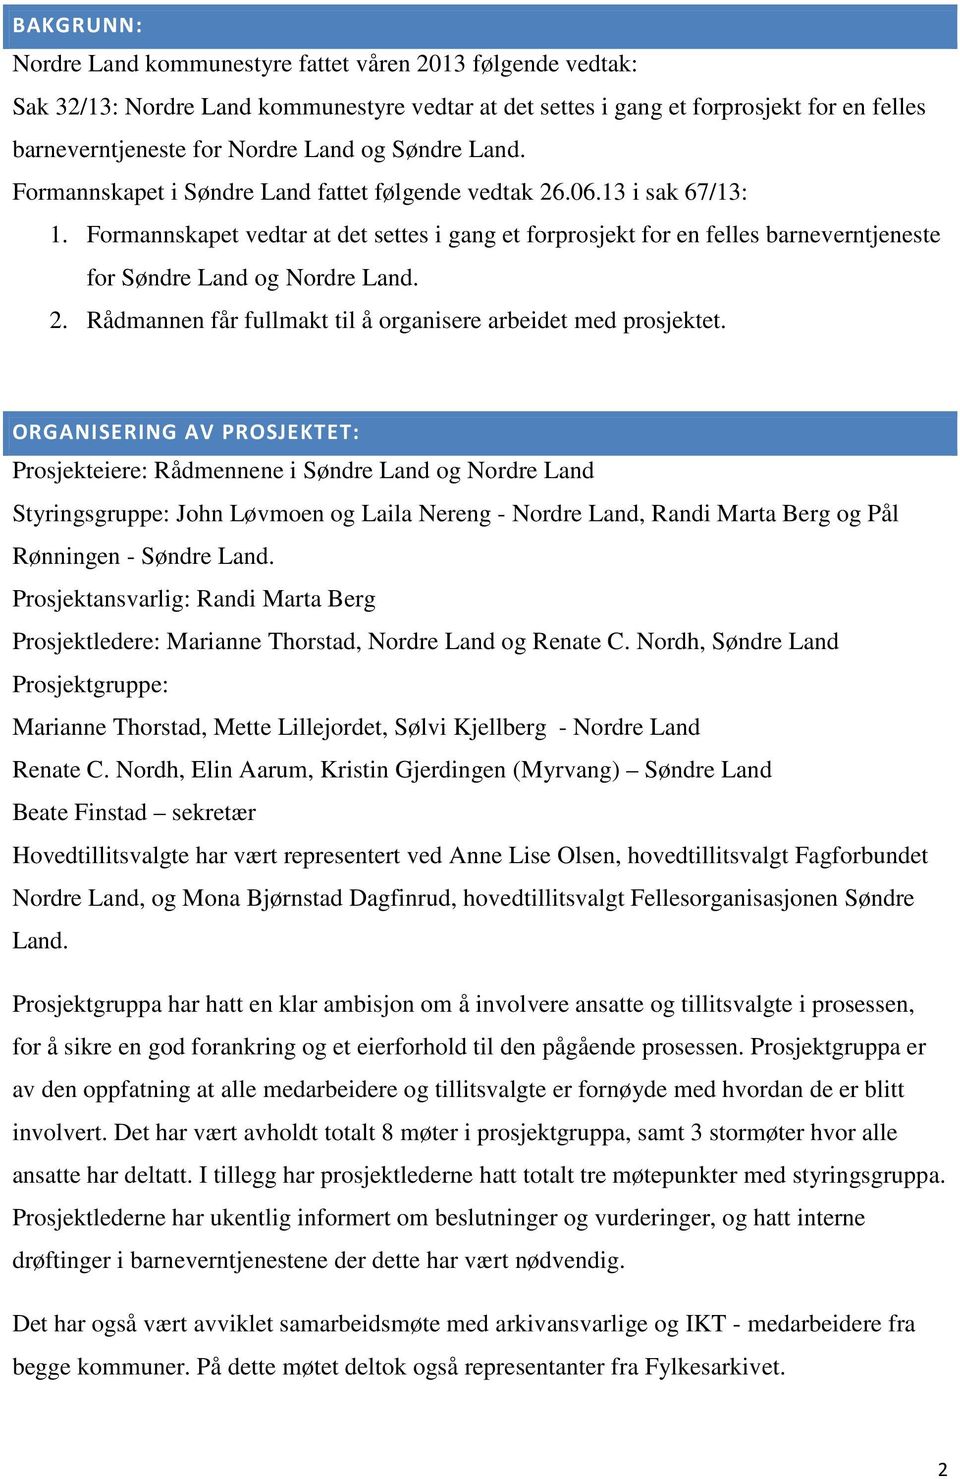 Formannskapet vedtar at det settes i gang et forprosjekt for en felles barneverntjeneste for Søndre Land og Nordre Land. 2. Rådmannen får fullmakt til å organisere arbeidet med prosjektet.